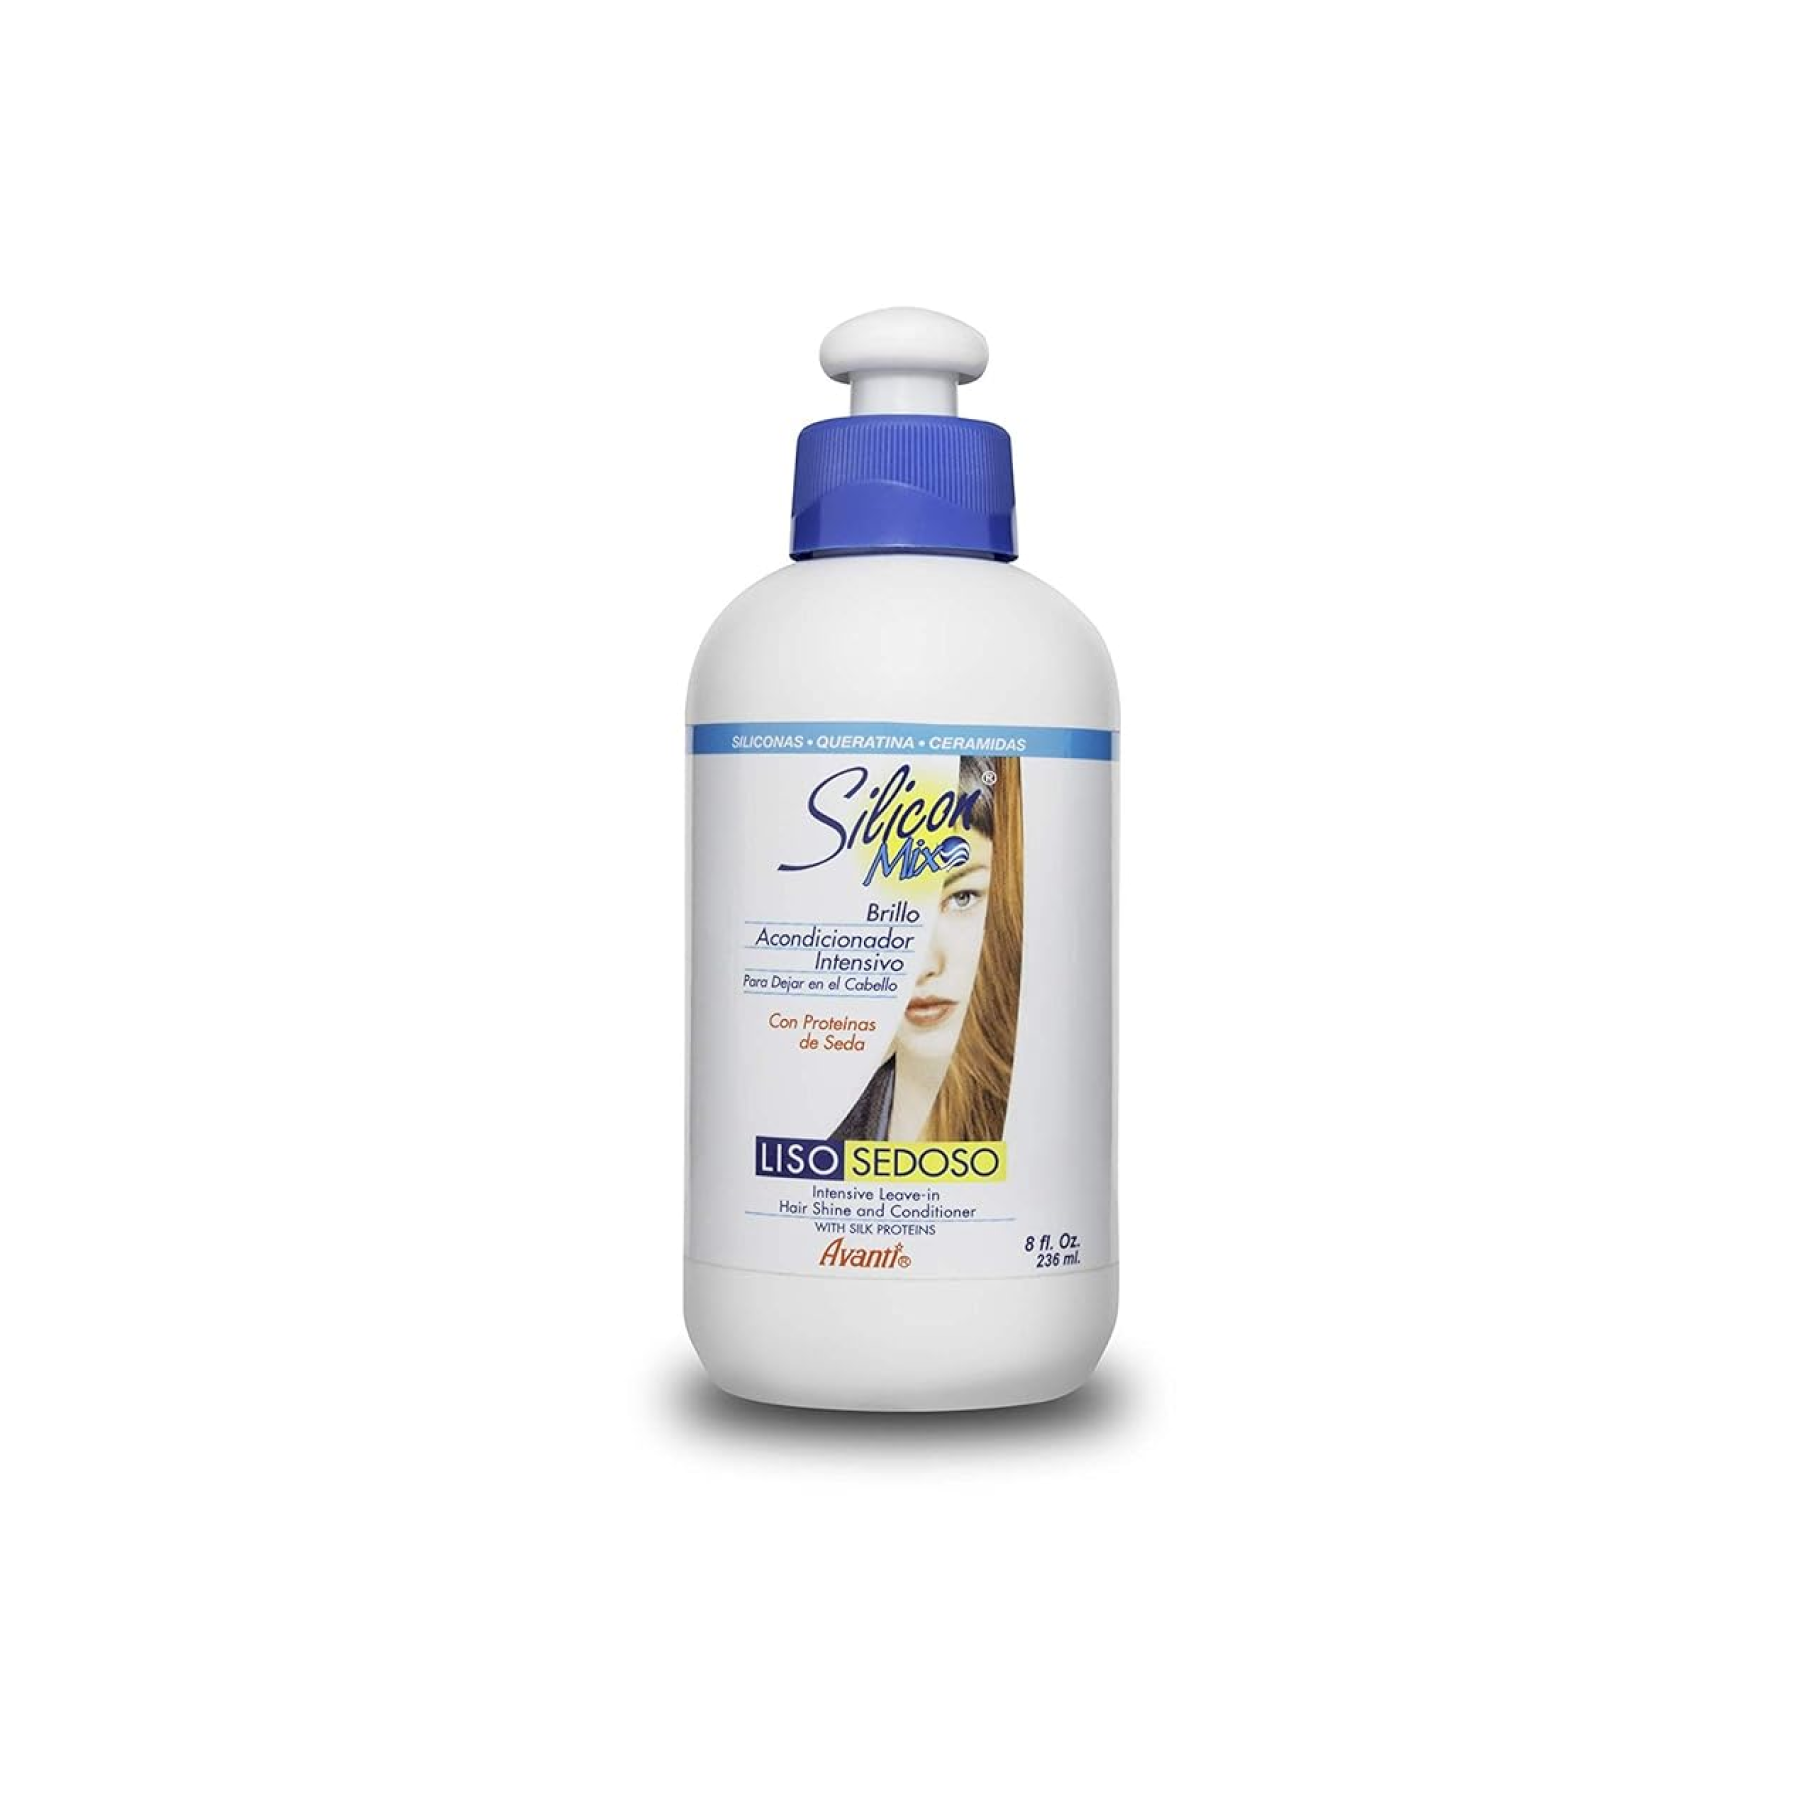 Silicon Mix Hidratante Leave-In Conditioner 8 oz